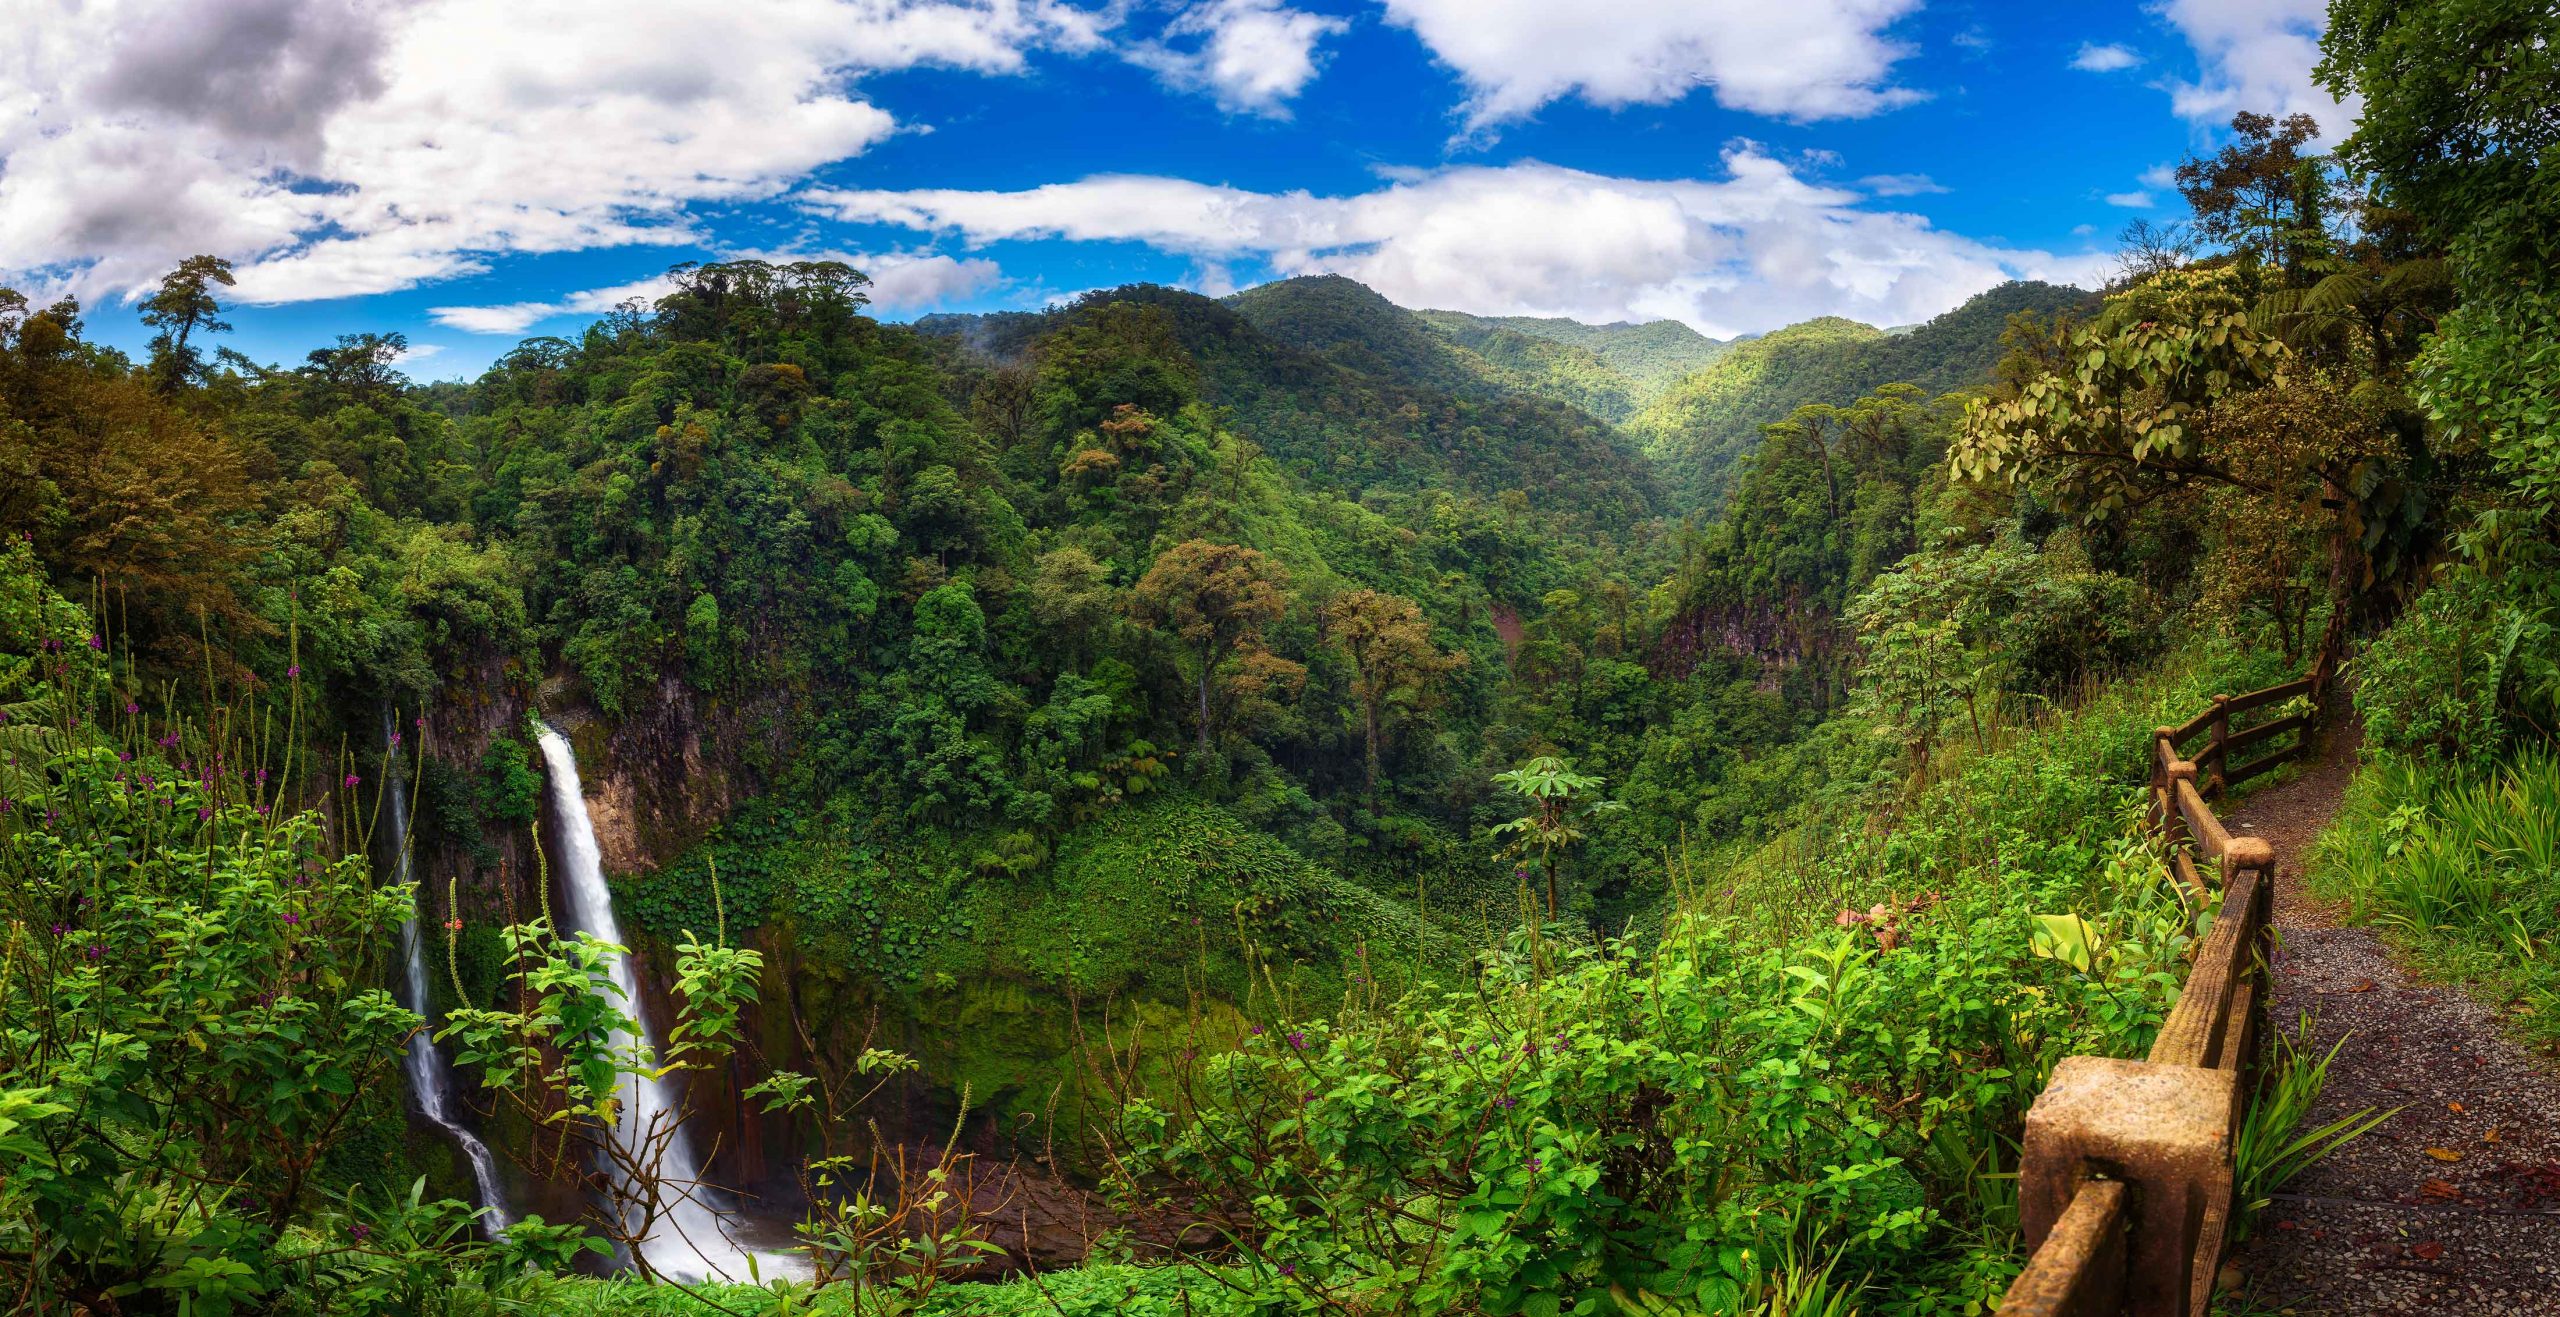 Catarata del Toro waterfall, Costa Rica 